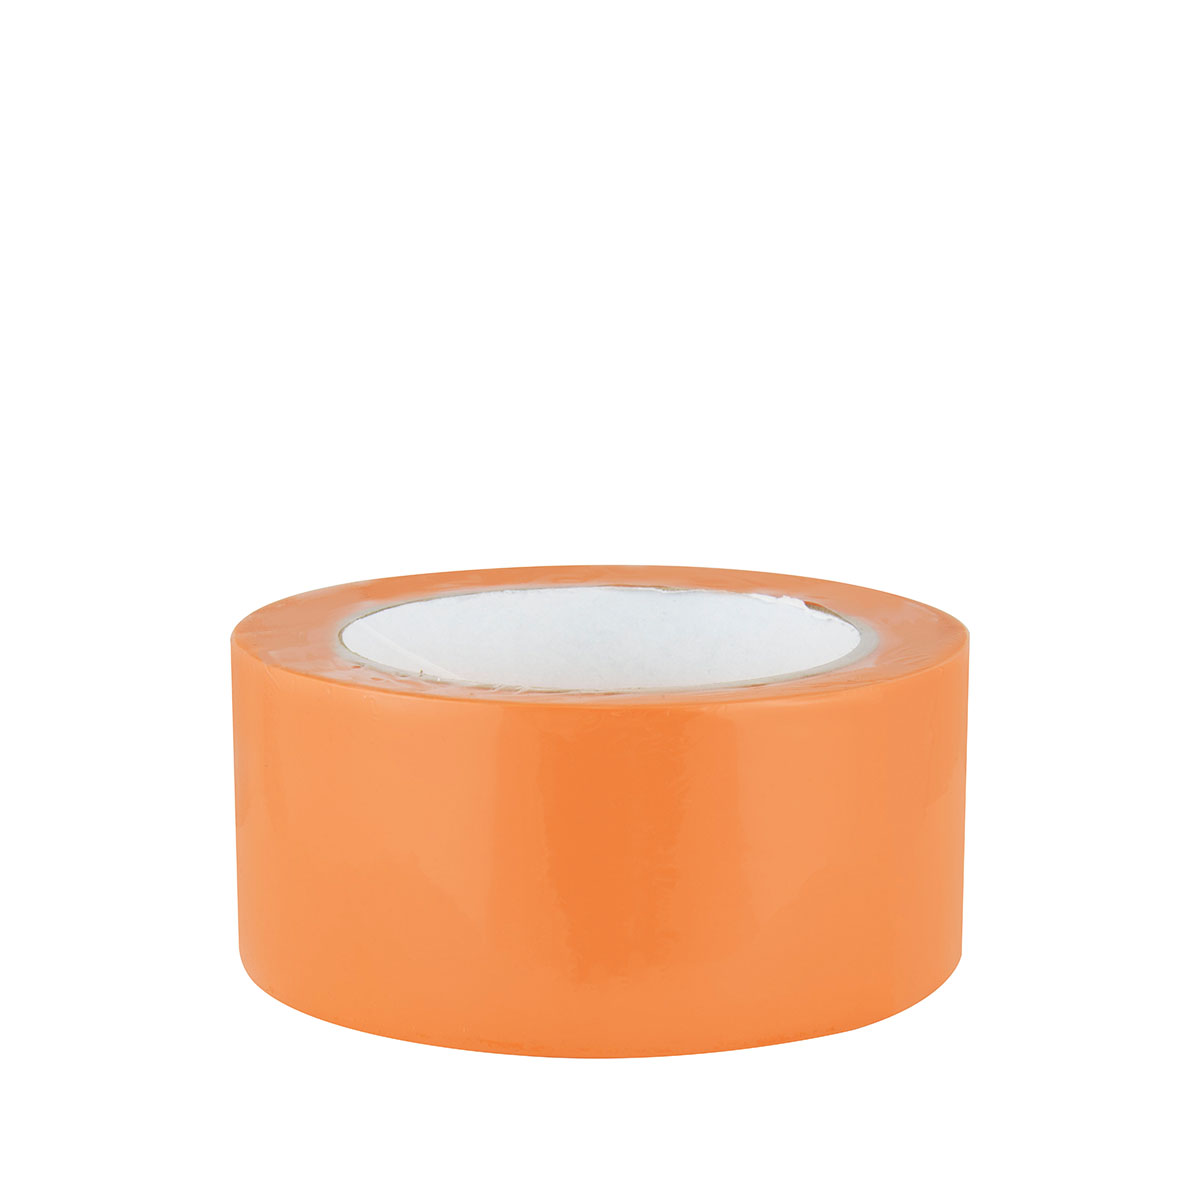 Farbklecks24 Verputzerband PVC Glatt orange versch. Größen, Schutzband